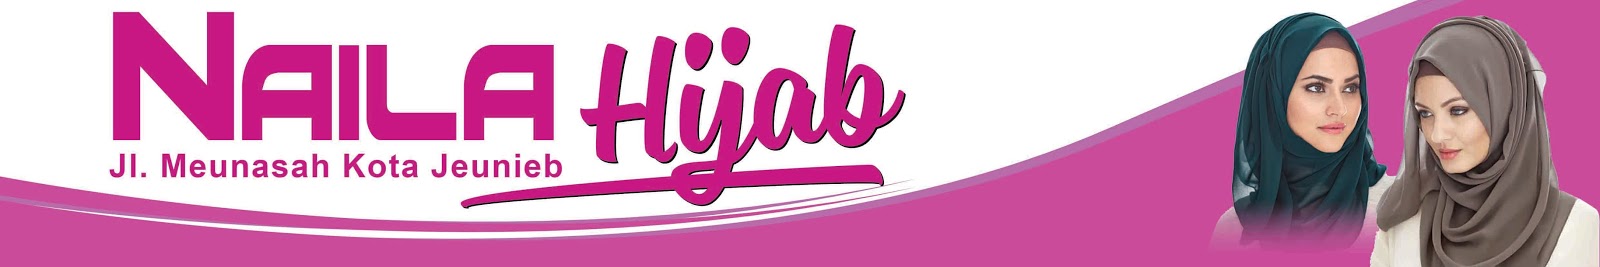 Download Gratis Contoh Banner Jualan Hijab  Full HD Lengkap 